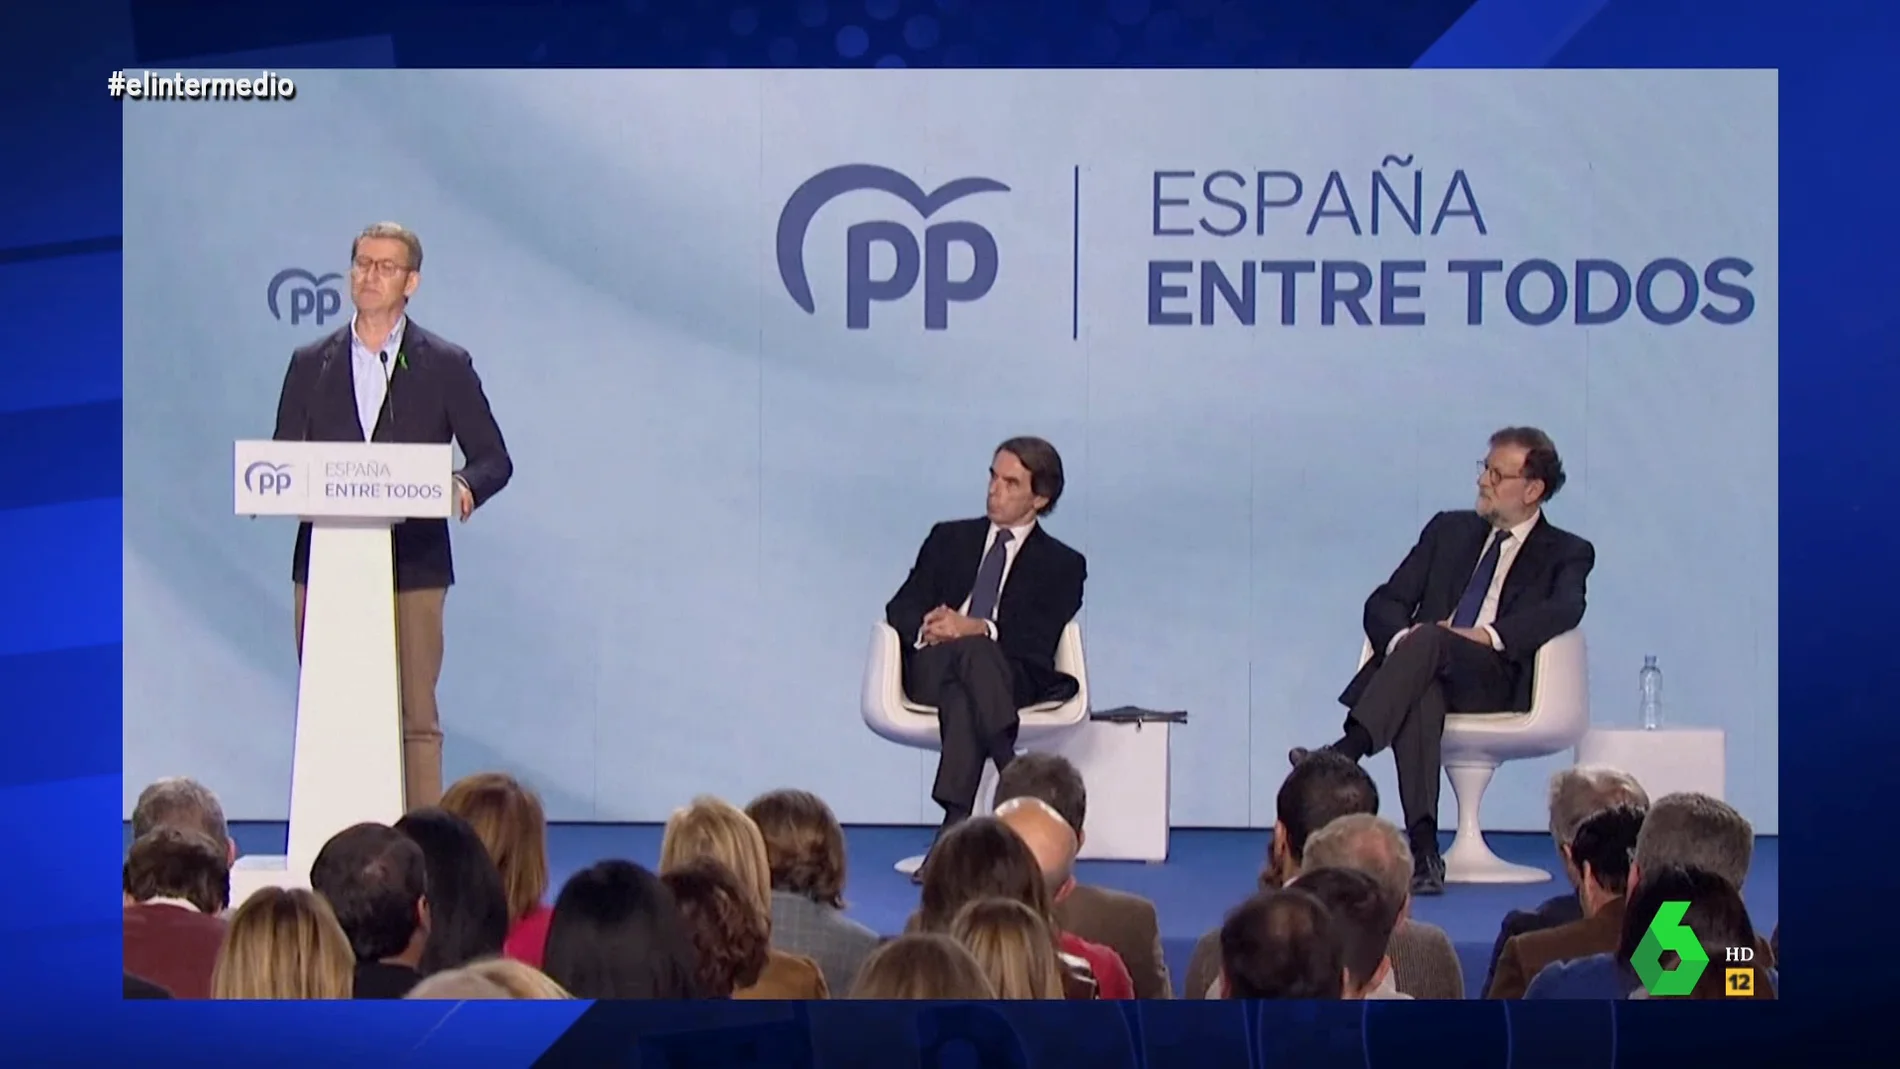 Dani Mateo analiza cómo Rajoy y Aznar son "la misma persona": "Miran a Feijóo como 'este no consigue ni la mayoría simple'"